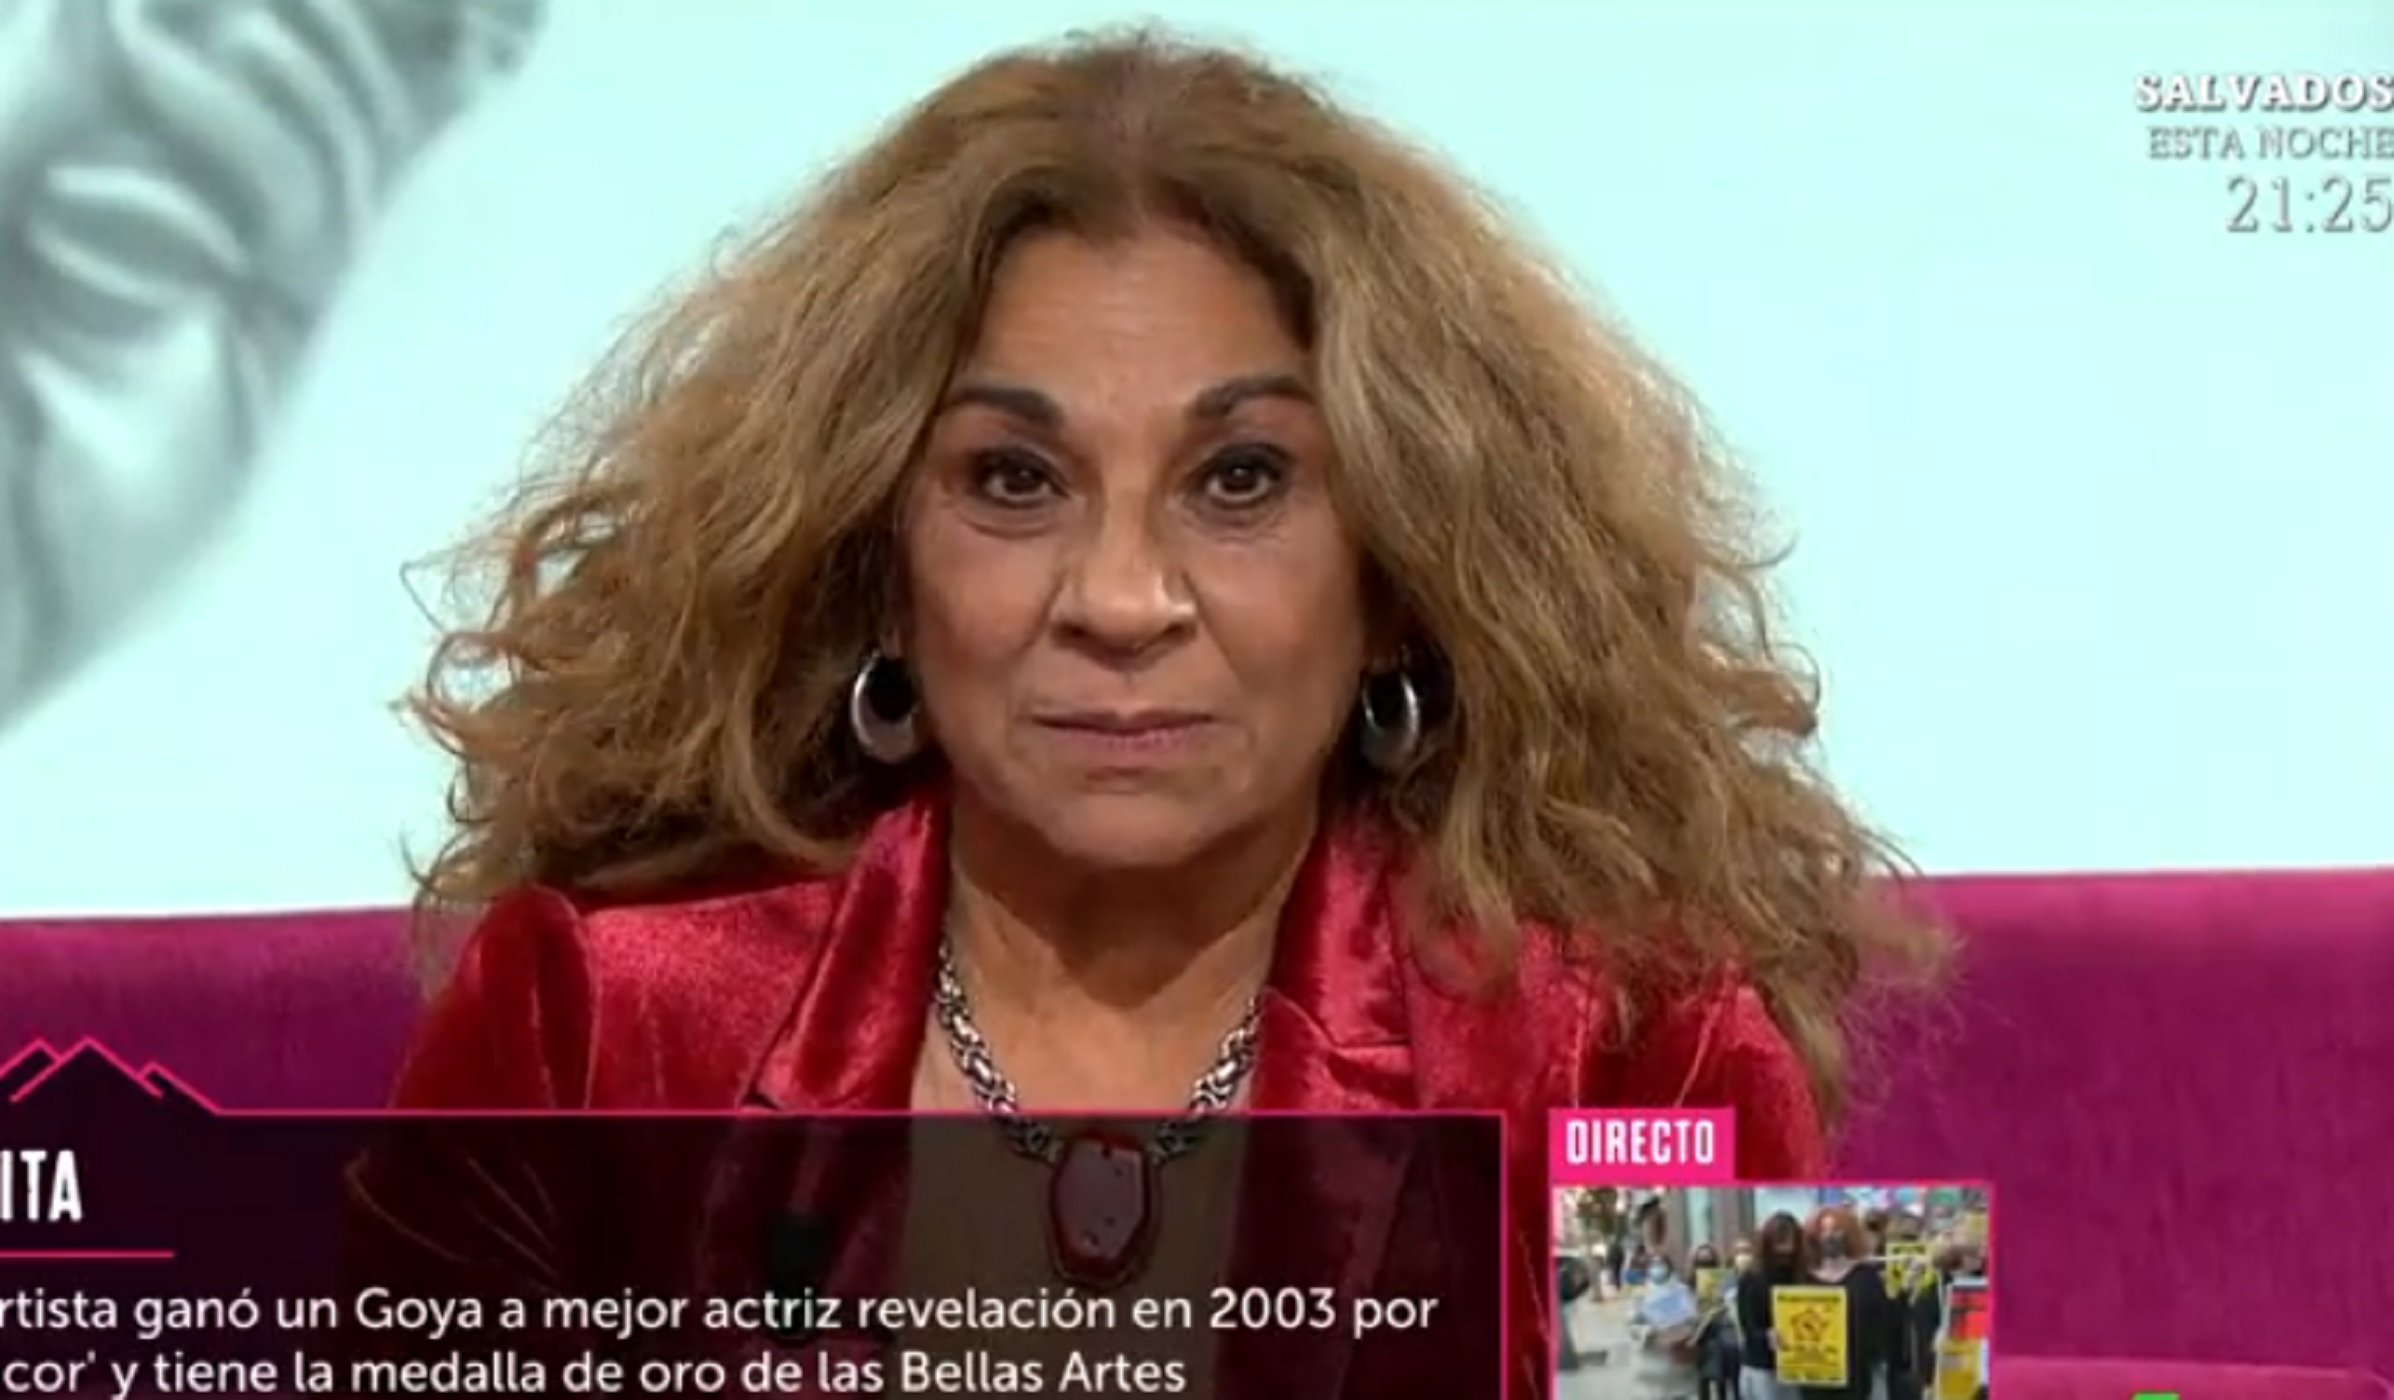 Lolita carga contra un presentador de Telecinco y le acusa de deberle dinero